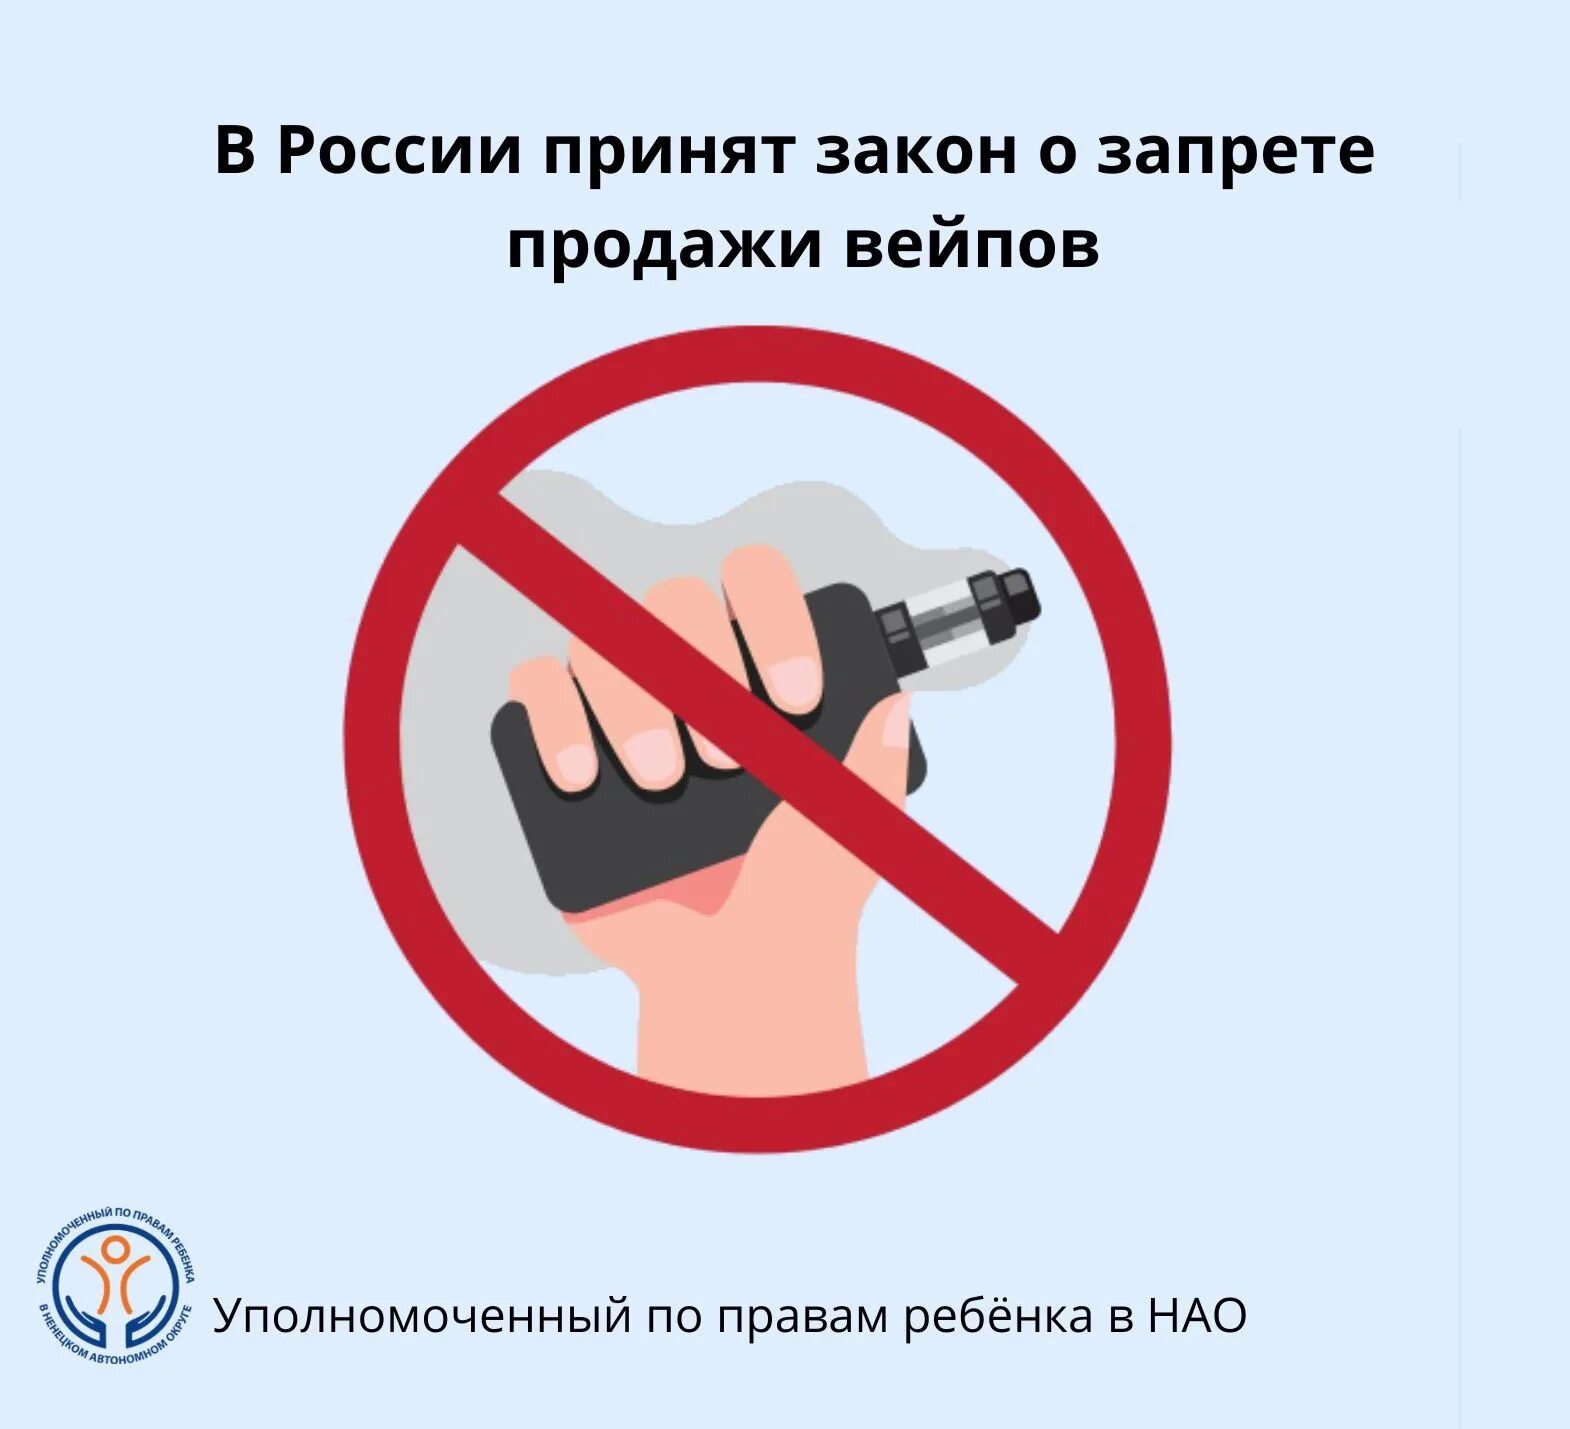 Запрет вейпов в россии последние новости. Запрет вейпов. Электронные сигареты запрещены. Курение электронных сигарет запрещено. Закон о запрете вейпов.